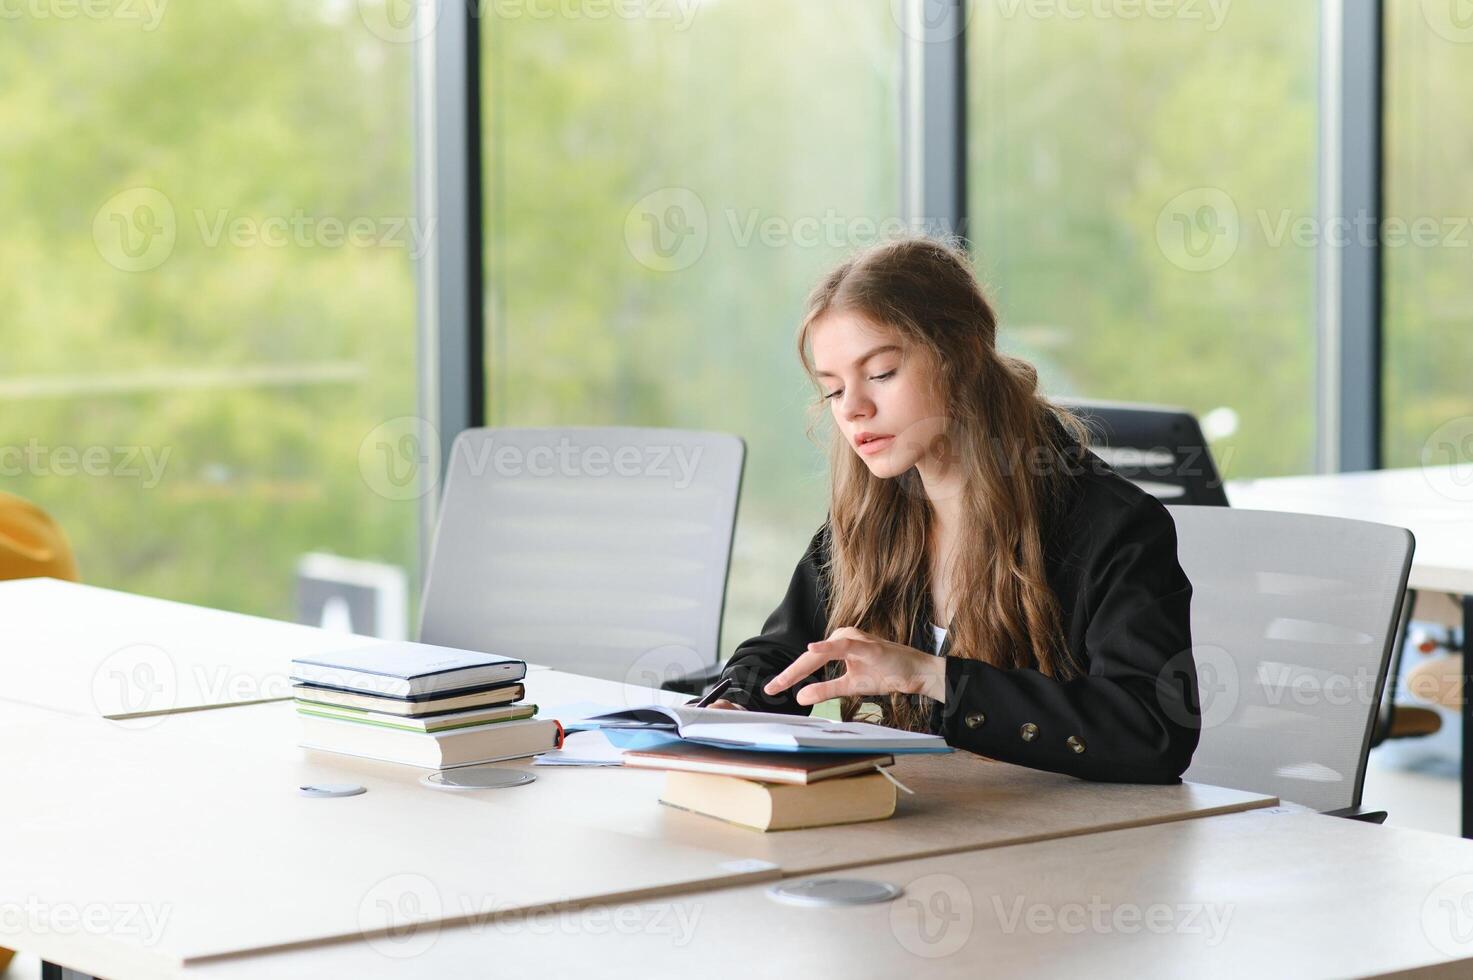 adolescente ragazza studiando con manuale scrittura saggio apprendimento nel aula. foto